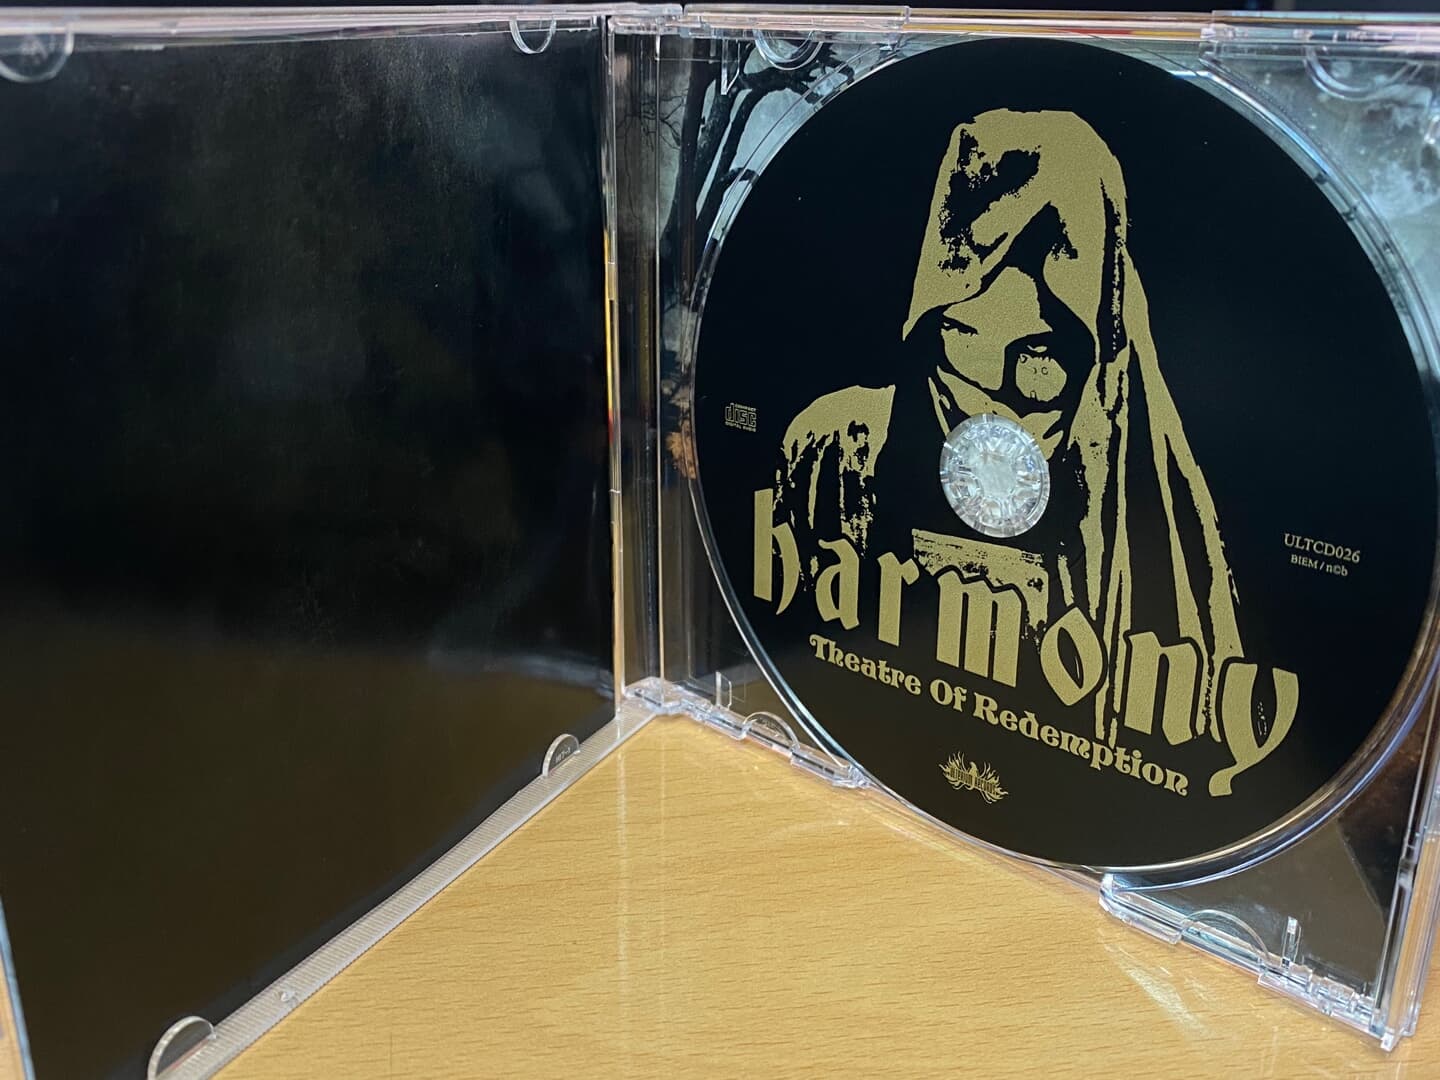 하모니 - Harmony - Theatre Of Redemption [스웨덴발매]